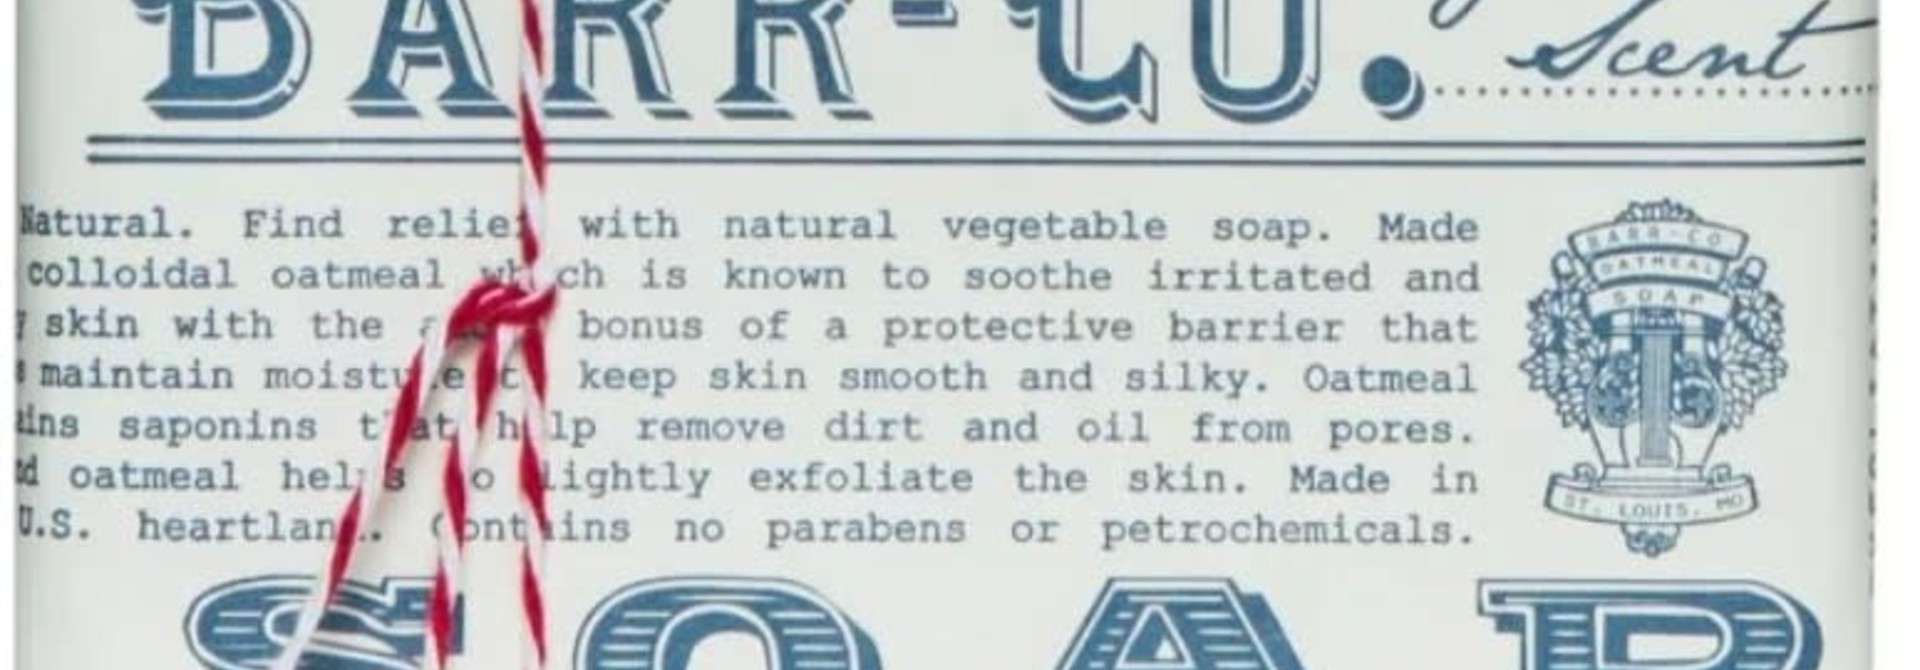 BAR SOAP BARR CO ORIGINAL 6oz-1910